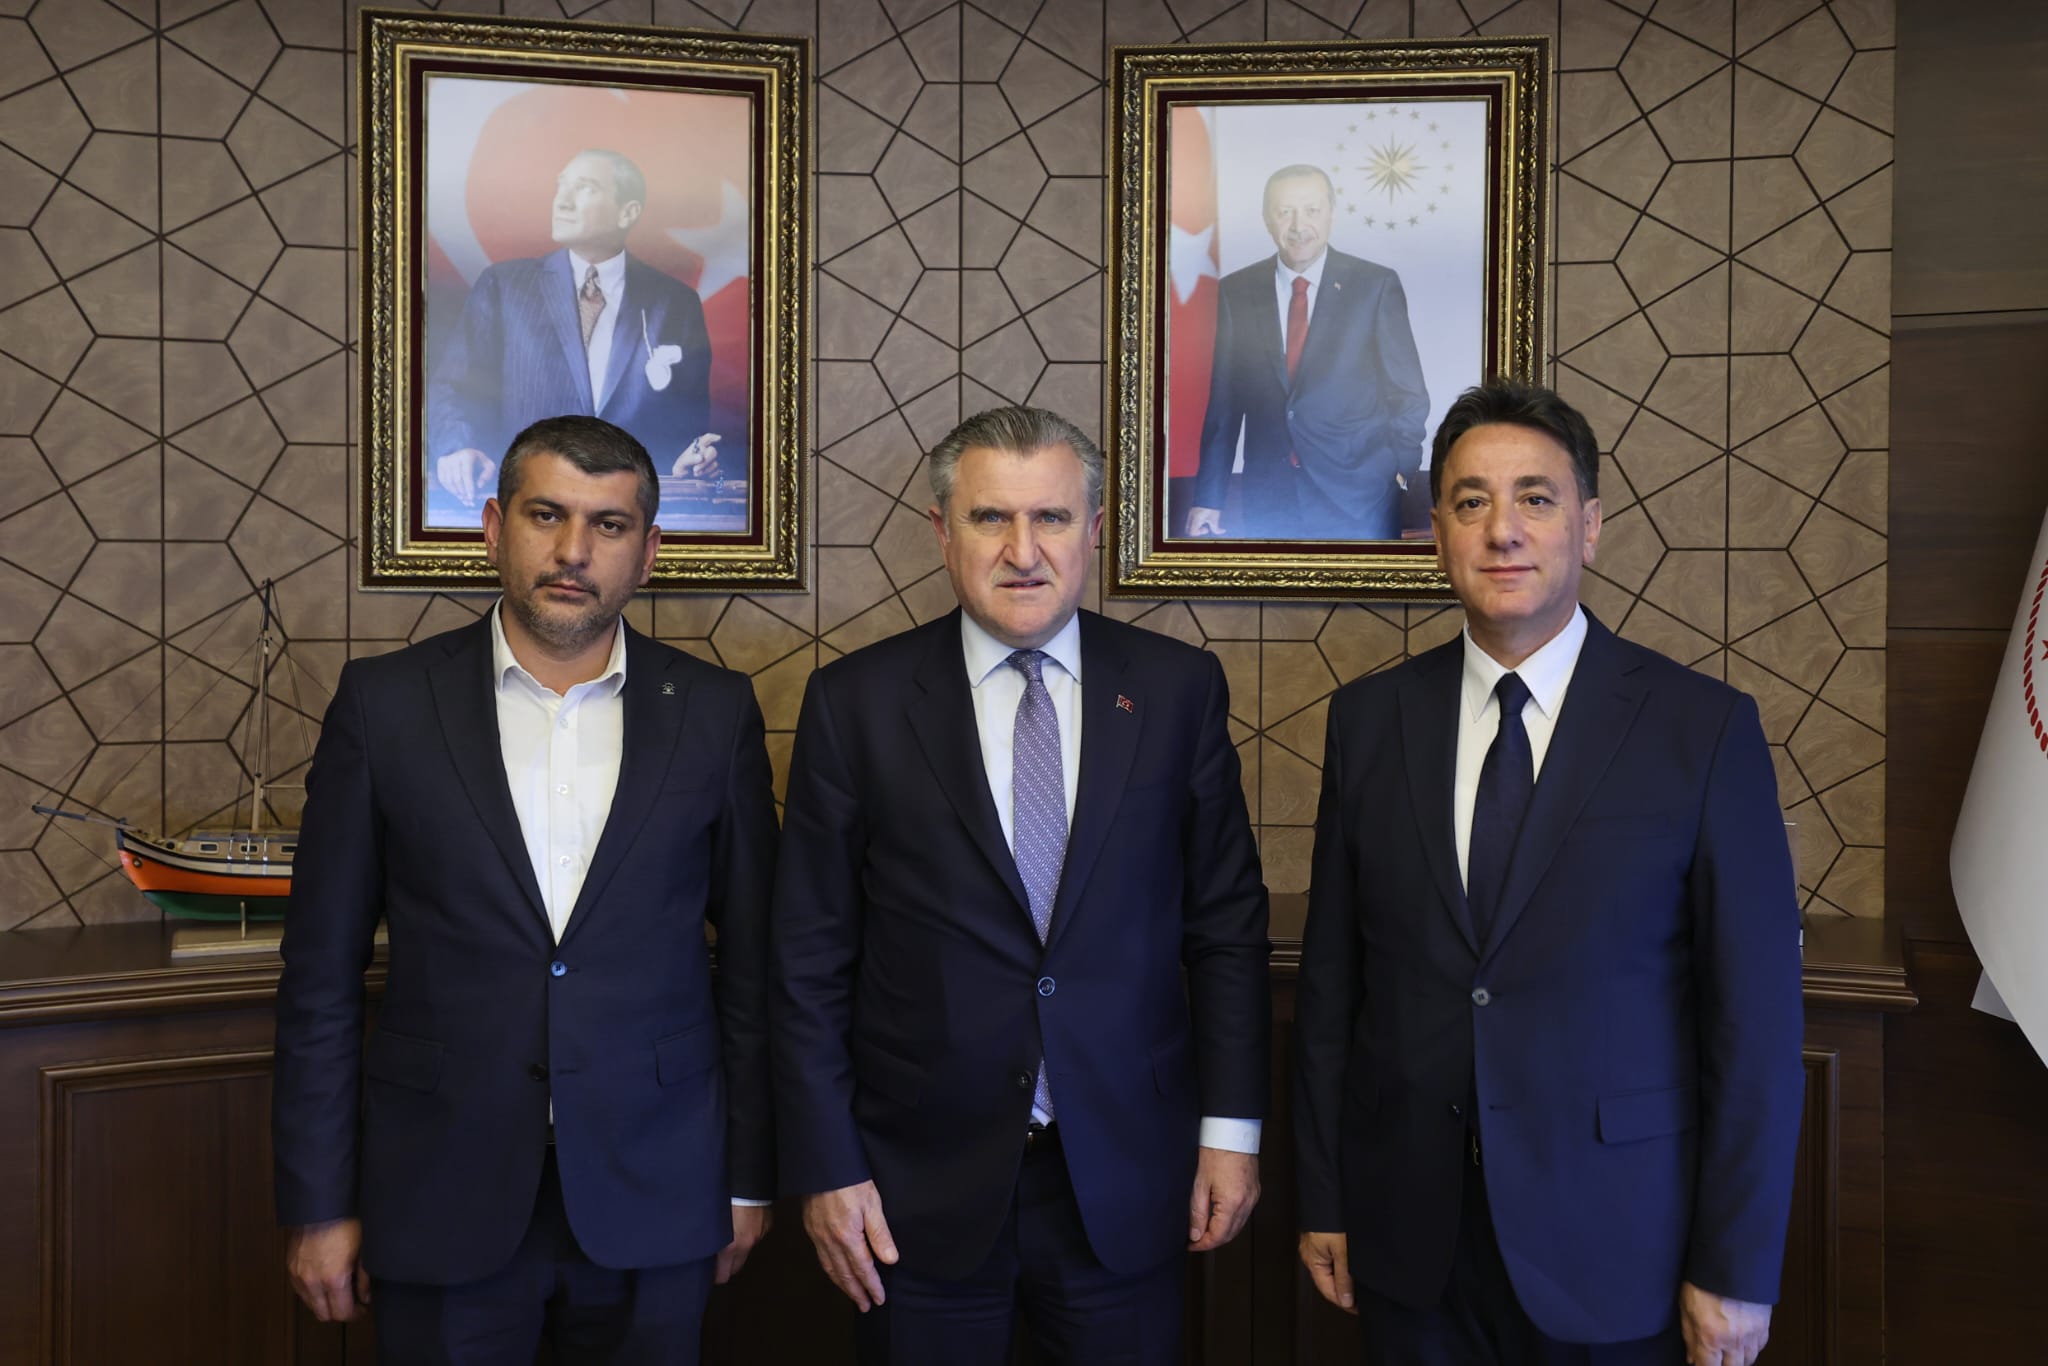 Develi Belediye Başkanı ve AK Parti İlçe Başkanı, Bakan ile Spor Yatırımları Konusunda Görüştü